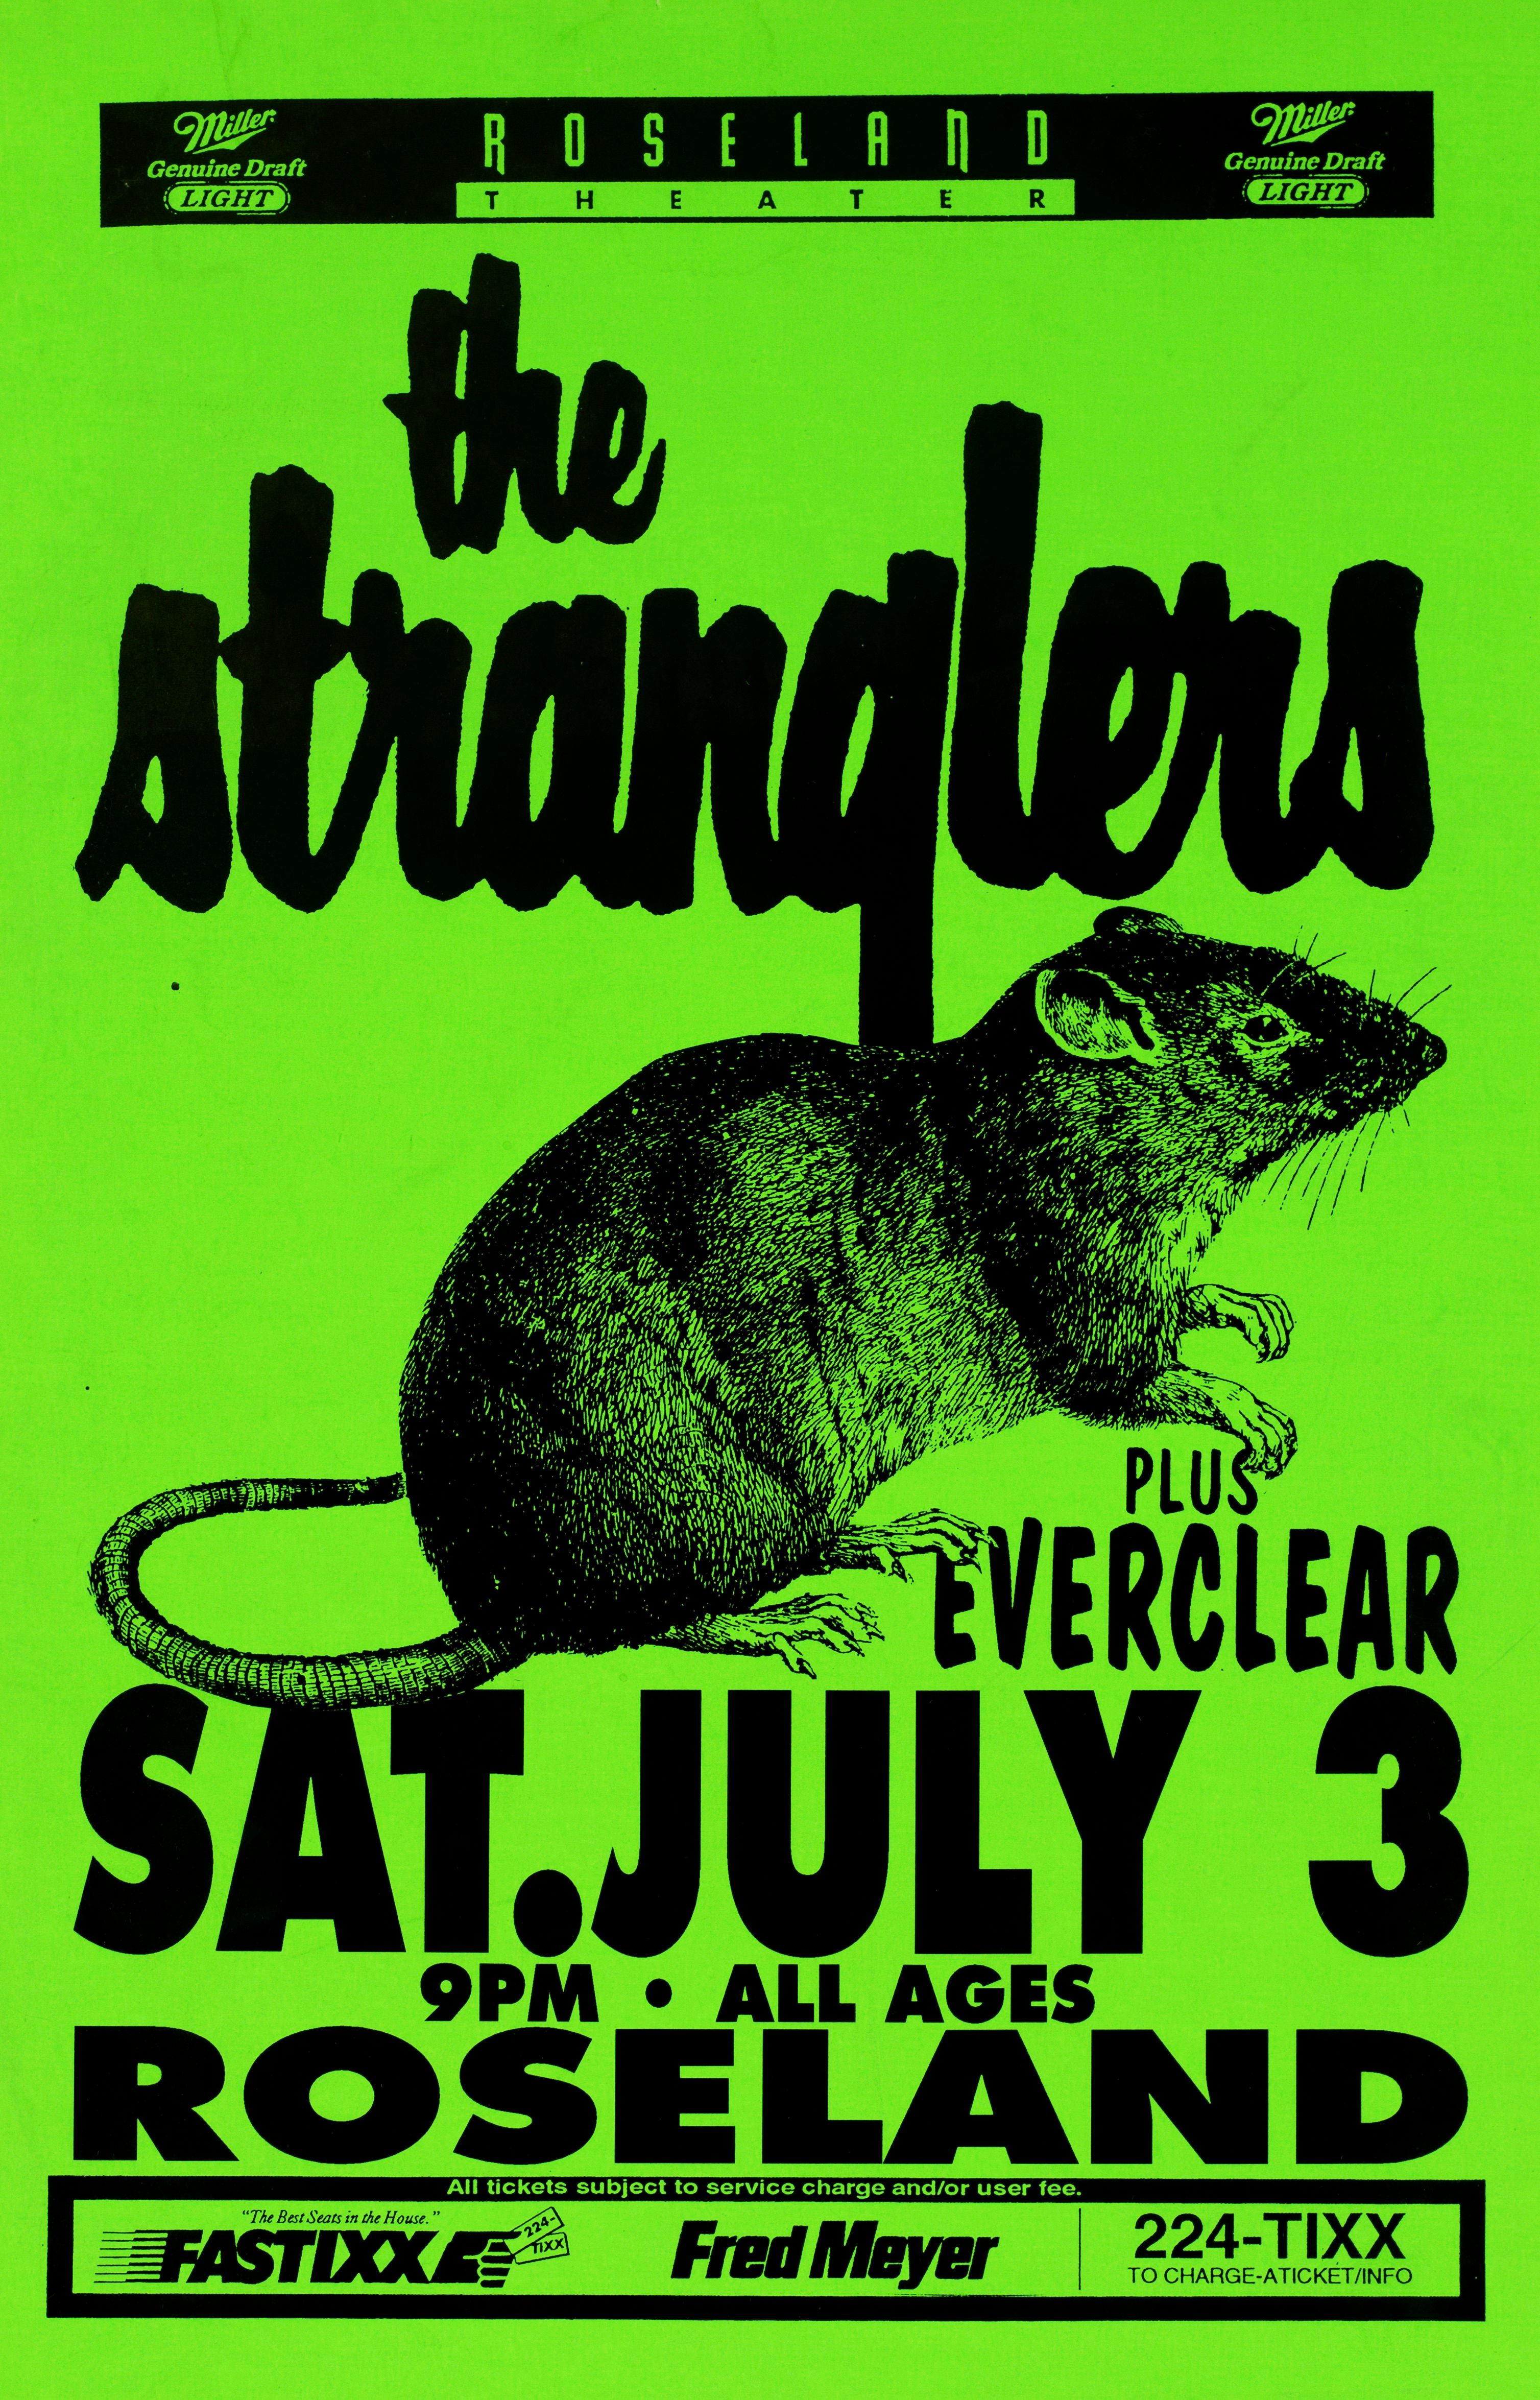 MXP-153.5 Stranglers Roseland Theater 1993 Concert Poster